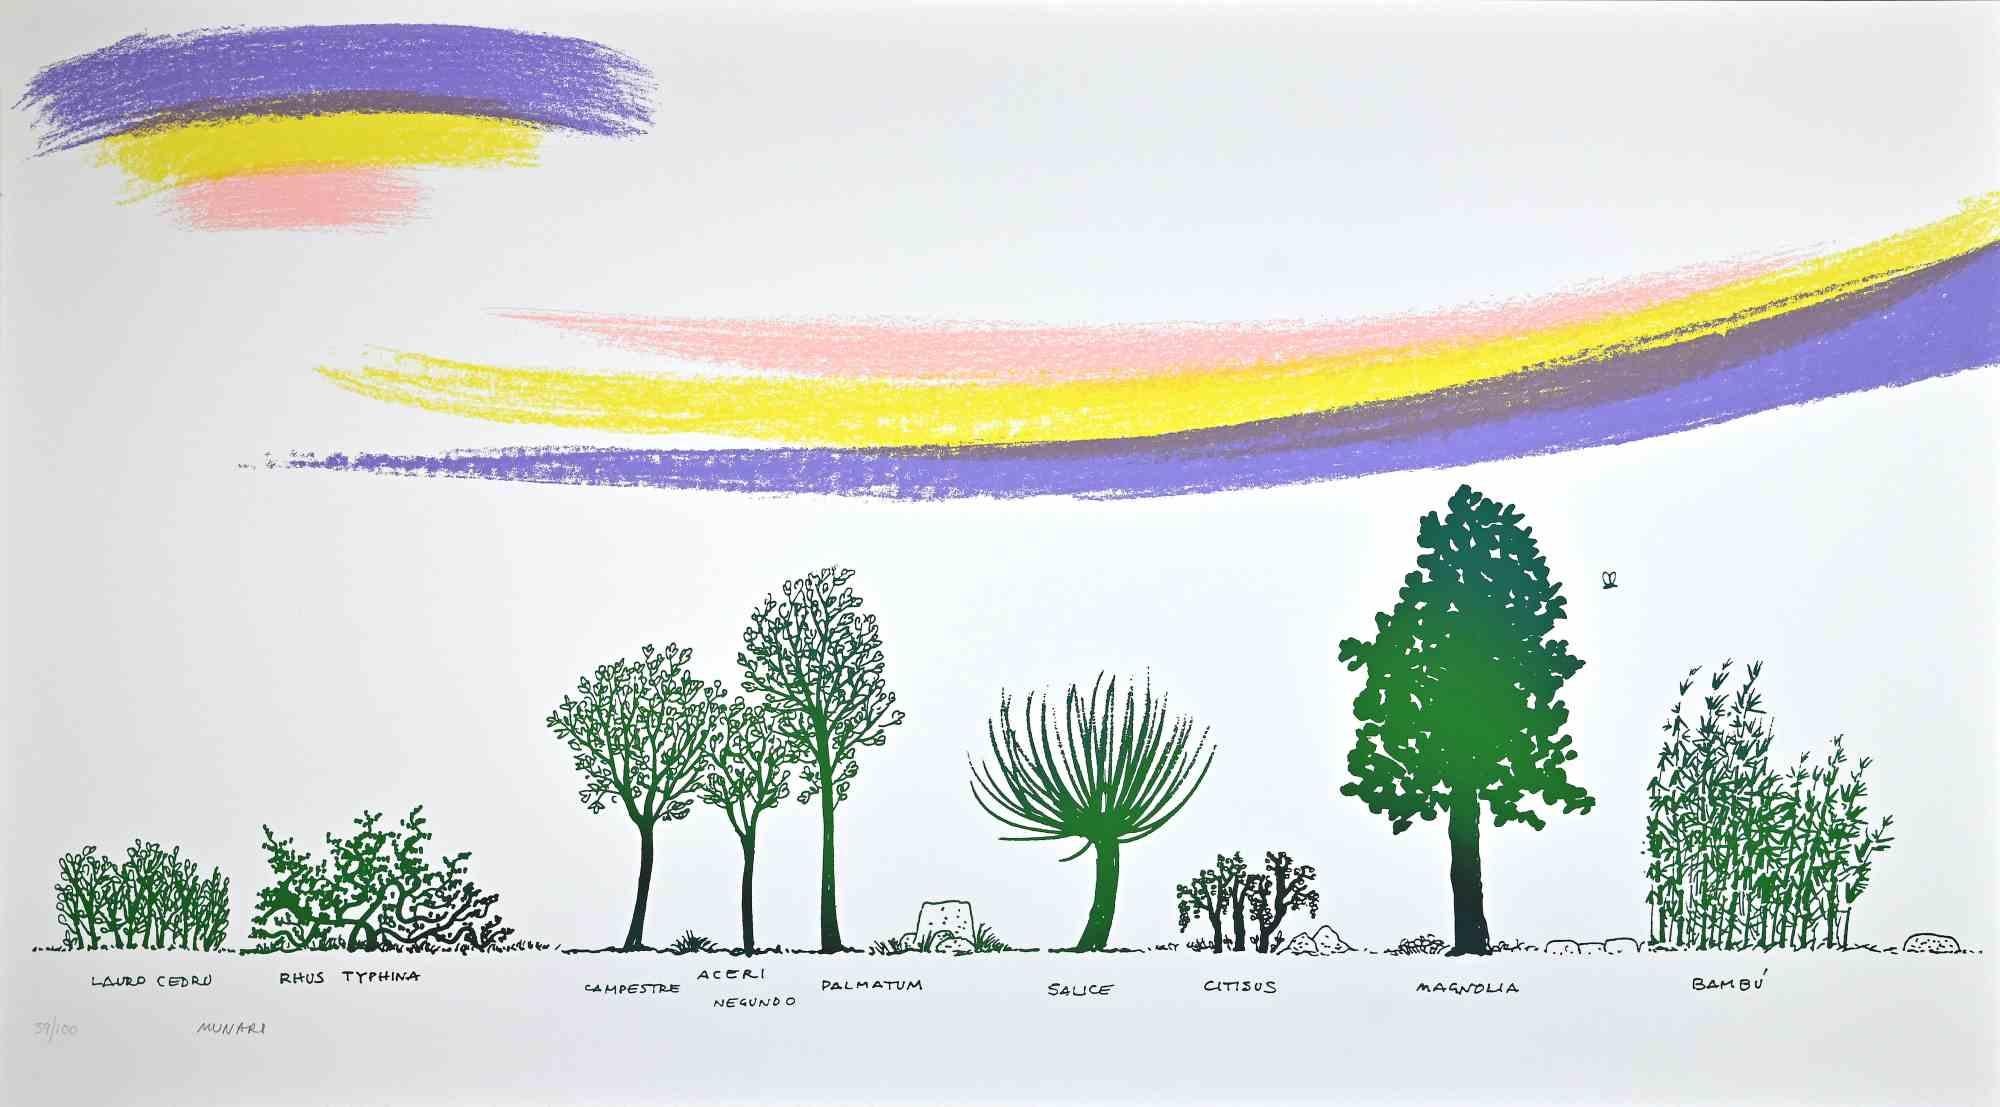 A Way of Different Trees est une sérigraphie réalisée par Bruno Munari dans les années 1980.

Signé à la main en bas, numéroté en bas à gauche, édition de 100 tirages.

Très bon état sur carton blanc.

L'œuvre d'art représente des sortes d'arbres